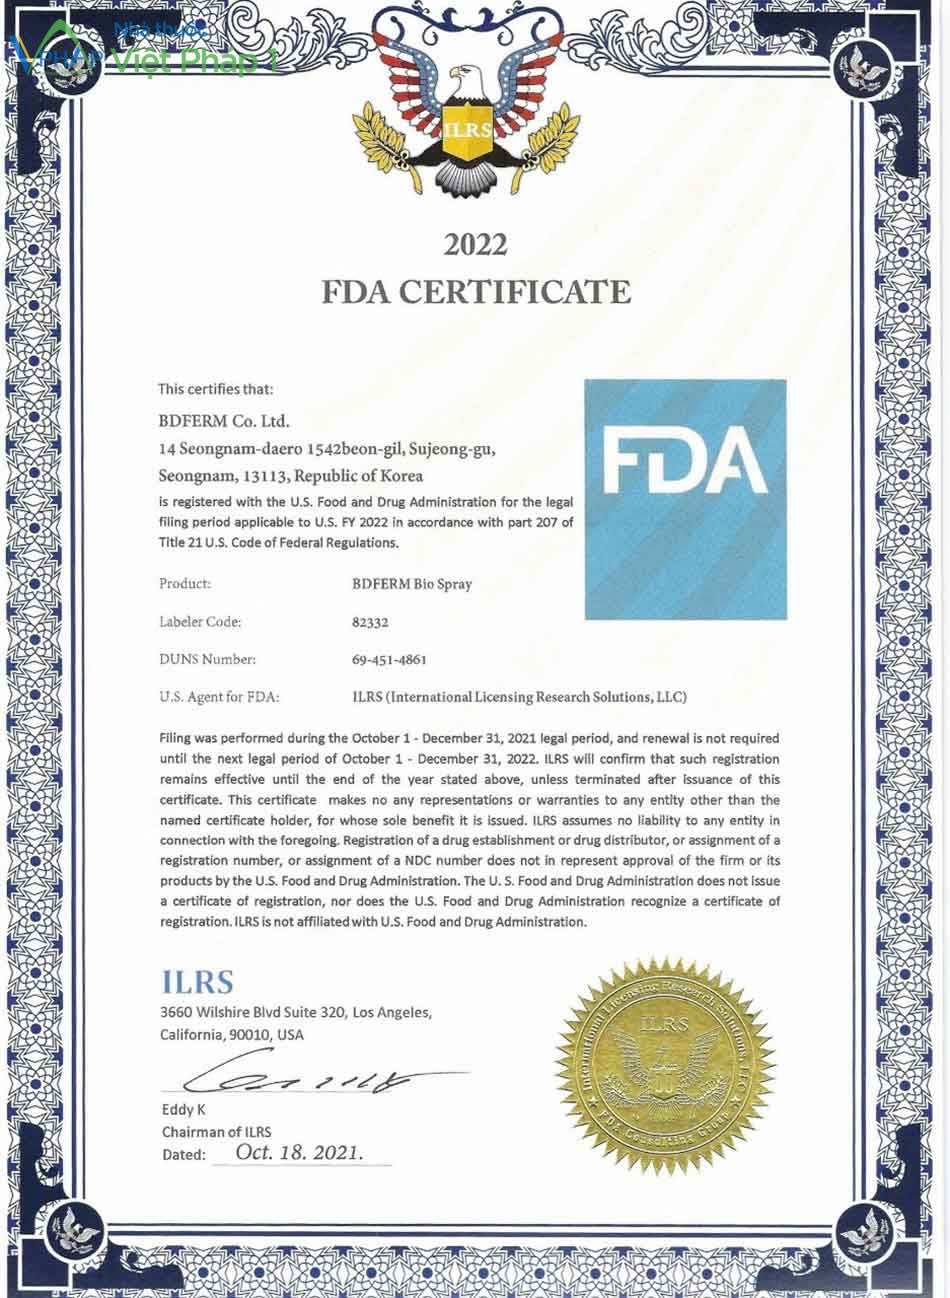 Chứng nhận của FDA phê duyệt BDFERM Bio Spray